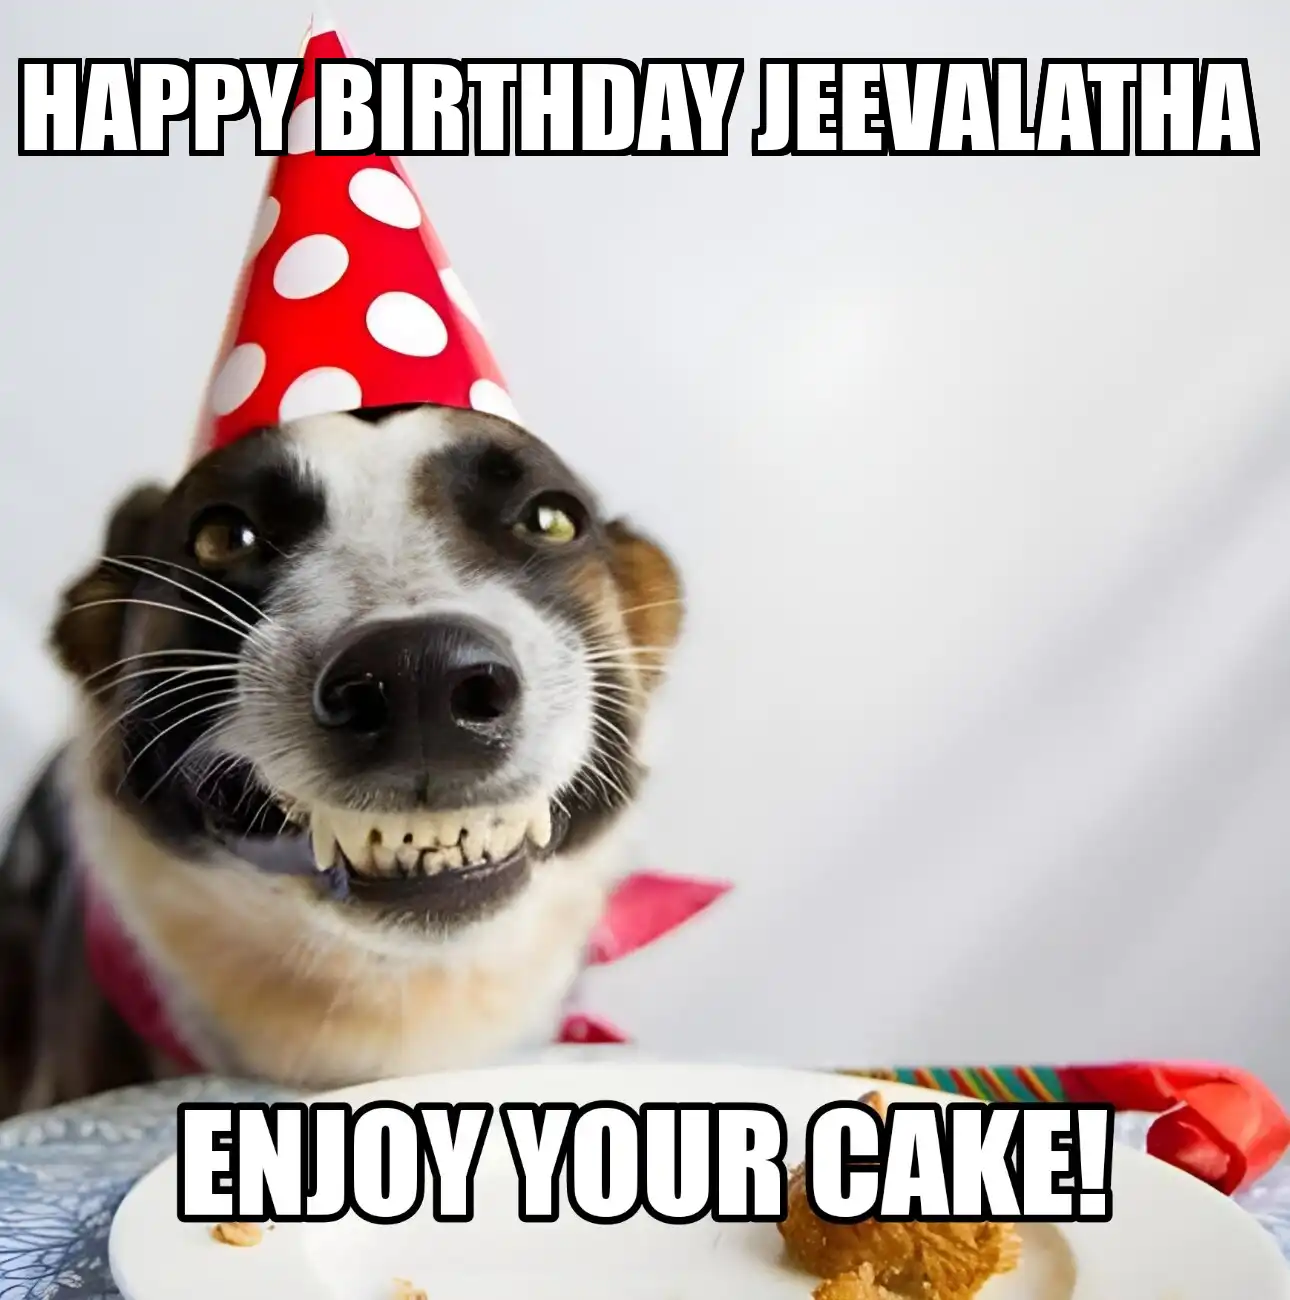 Happy Birthday Jeevalatha Enjoy Your Cake Dog Meme